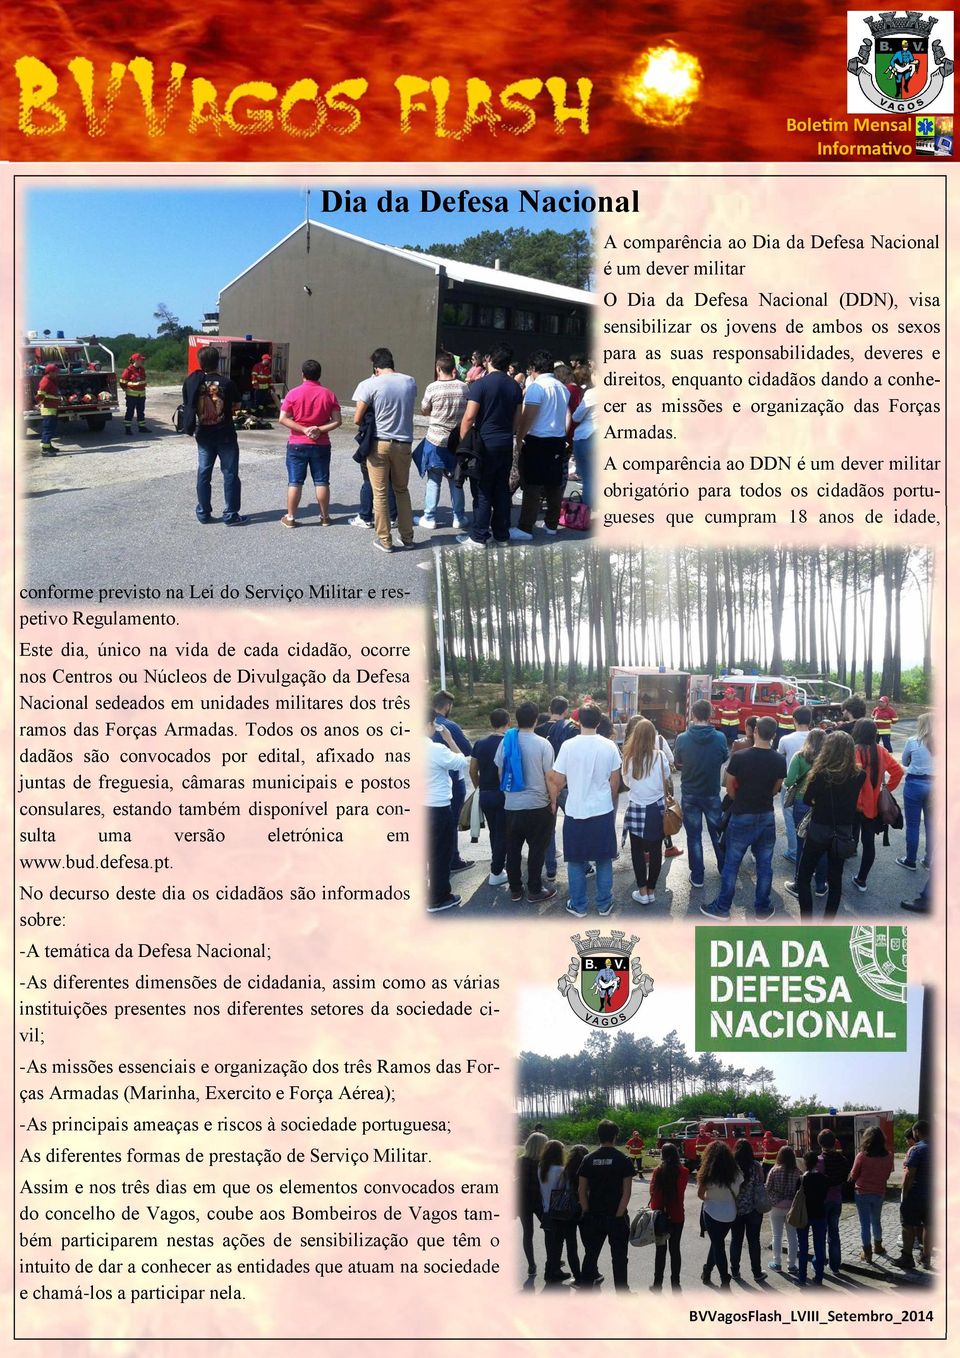 A comparência ao DDN é um dever militar obrigatório para todos os cidadãos portugueses que cumpram 18 anos de idade, conforme previsto na Lei do Serviço Militar e respetivo Regulamento.